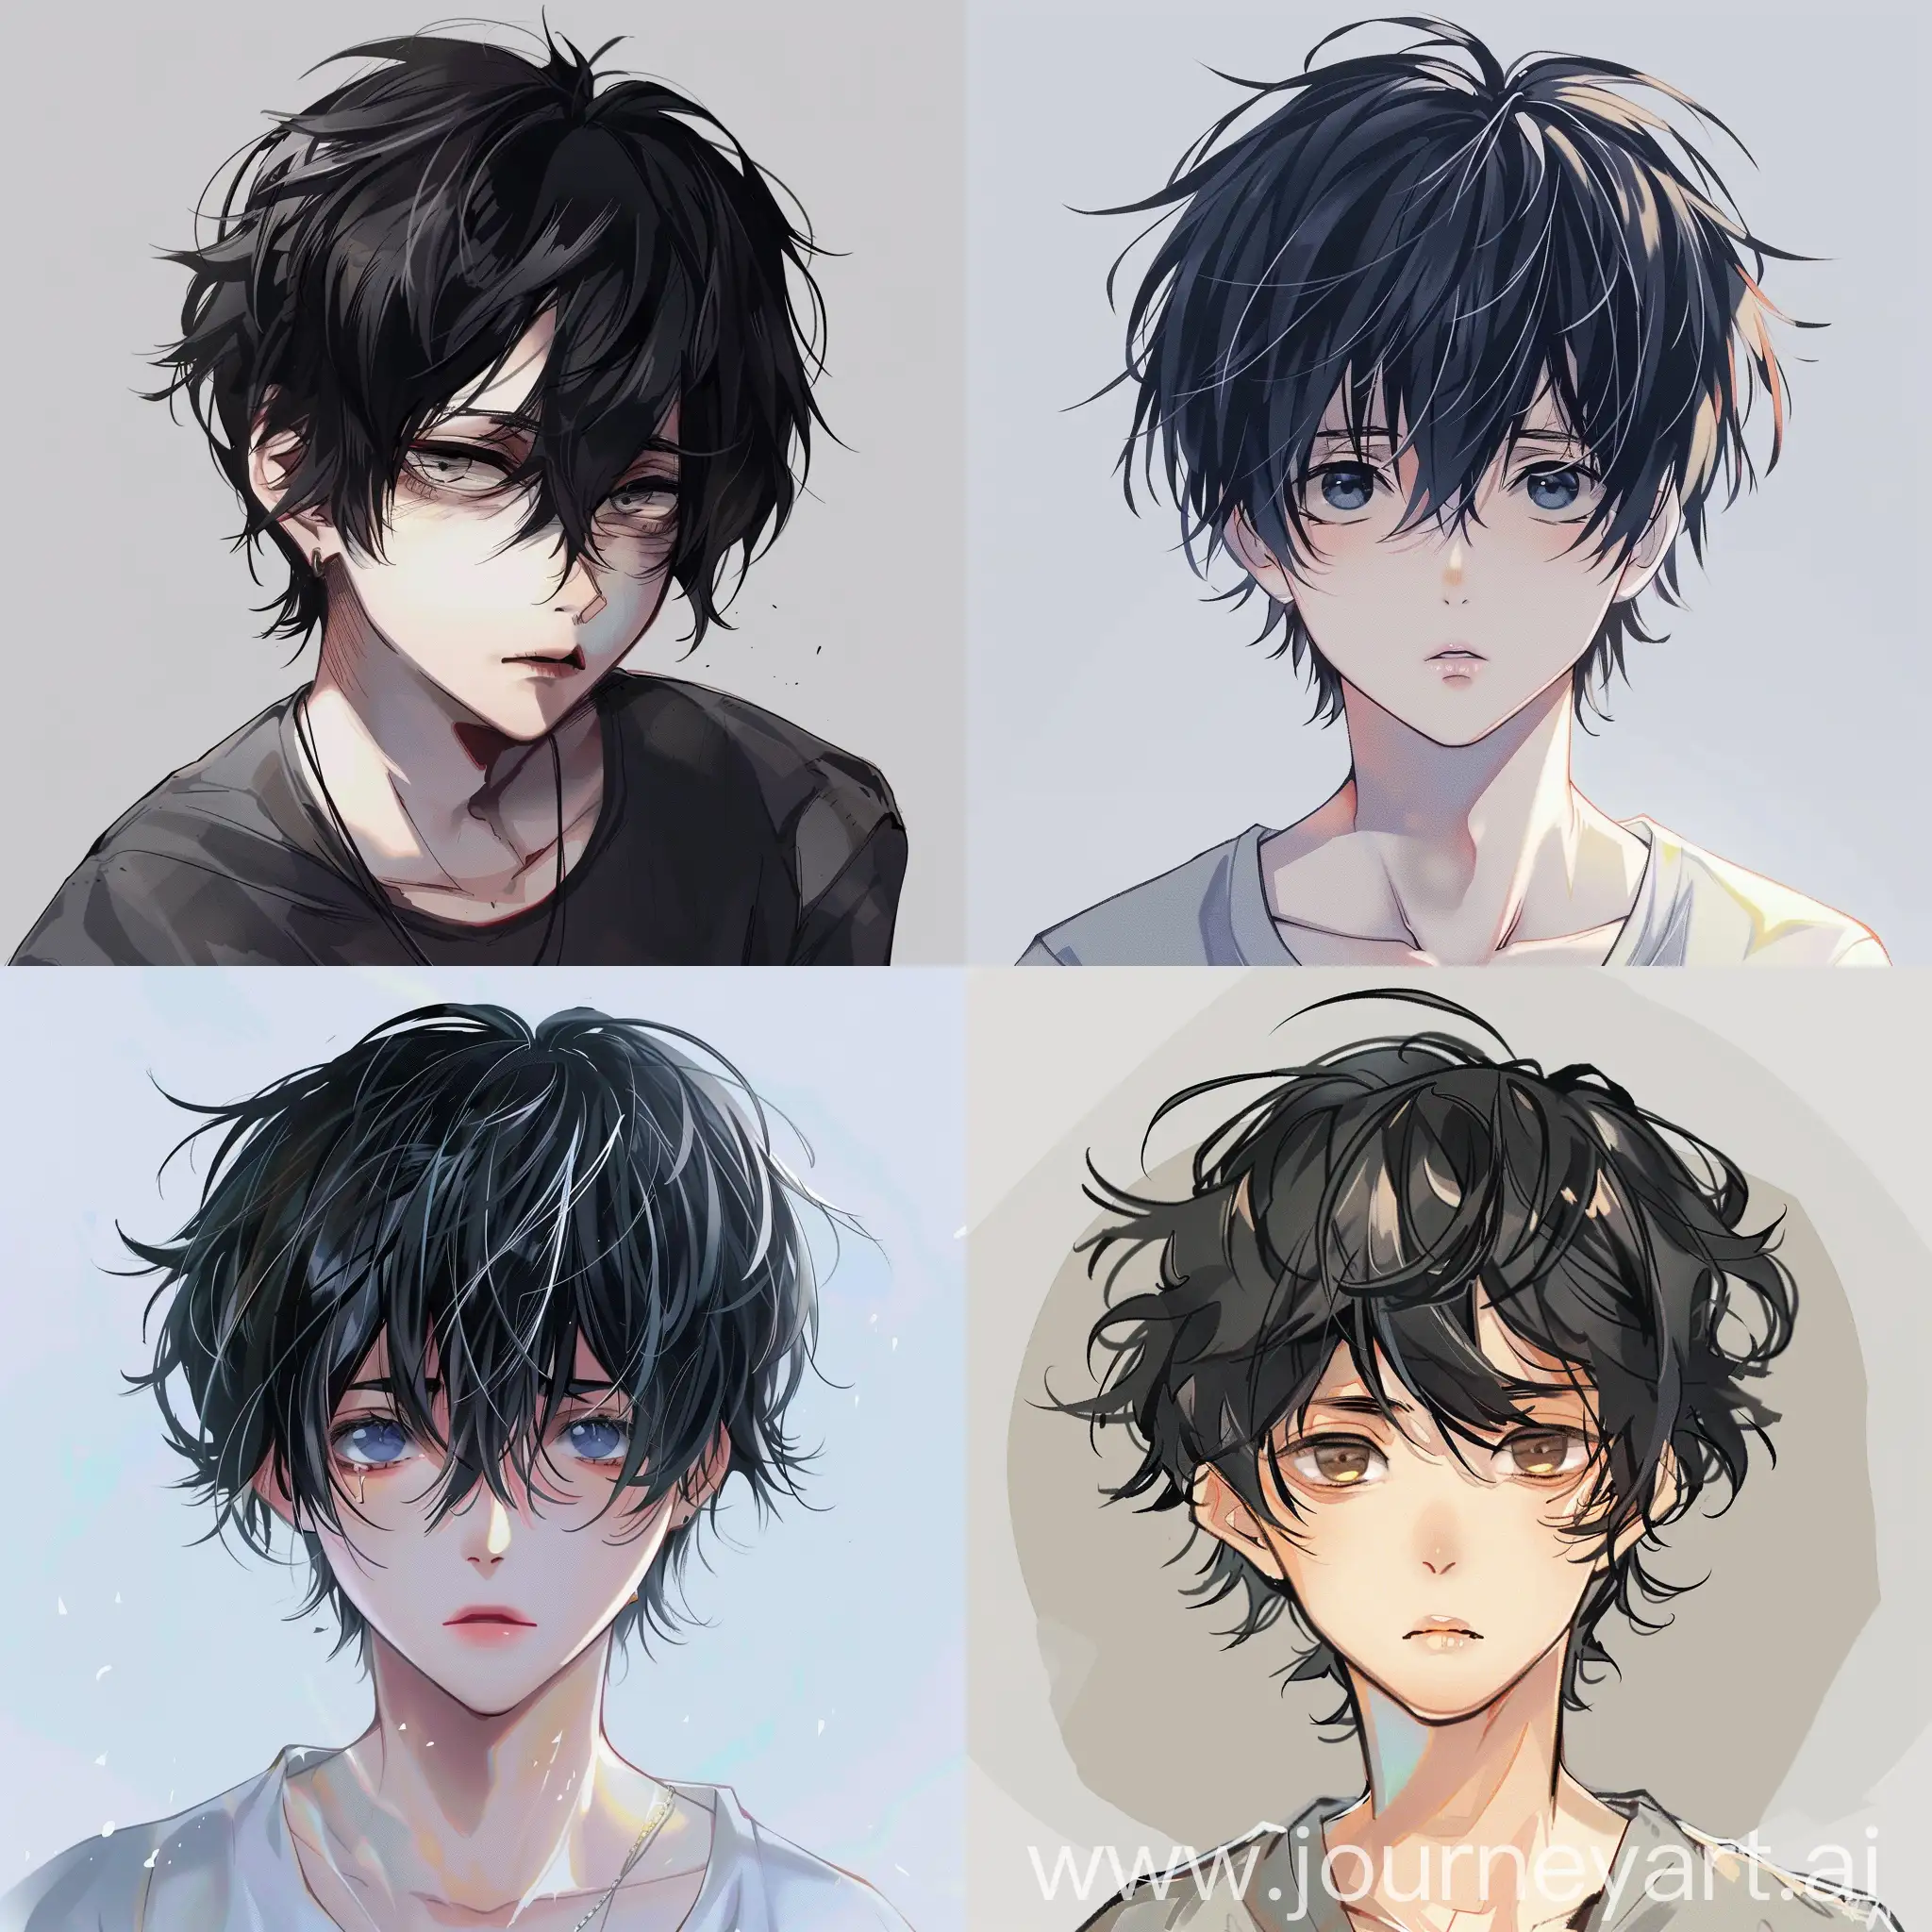 Enigmatic-Anime-Boy-with-Sleek-Black-Hair